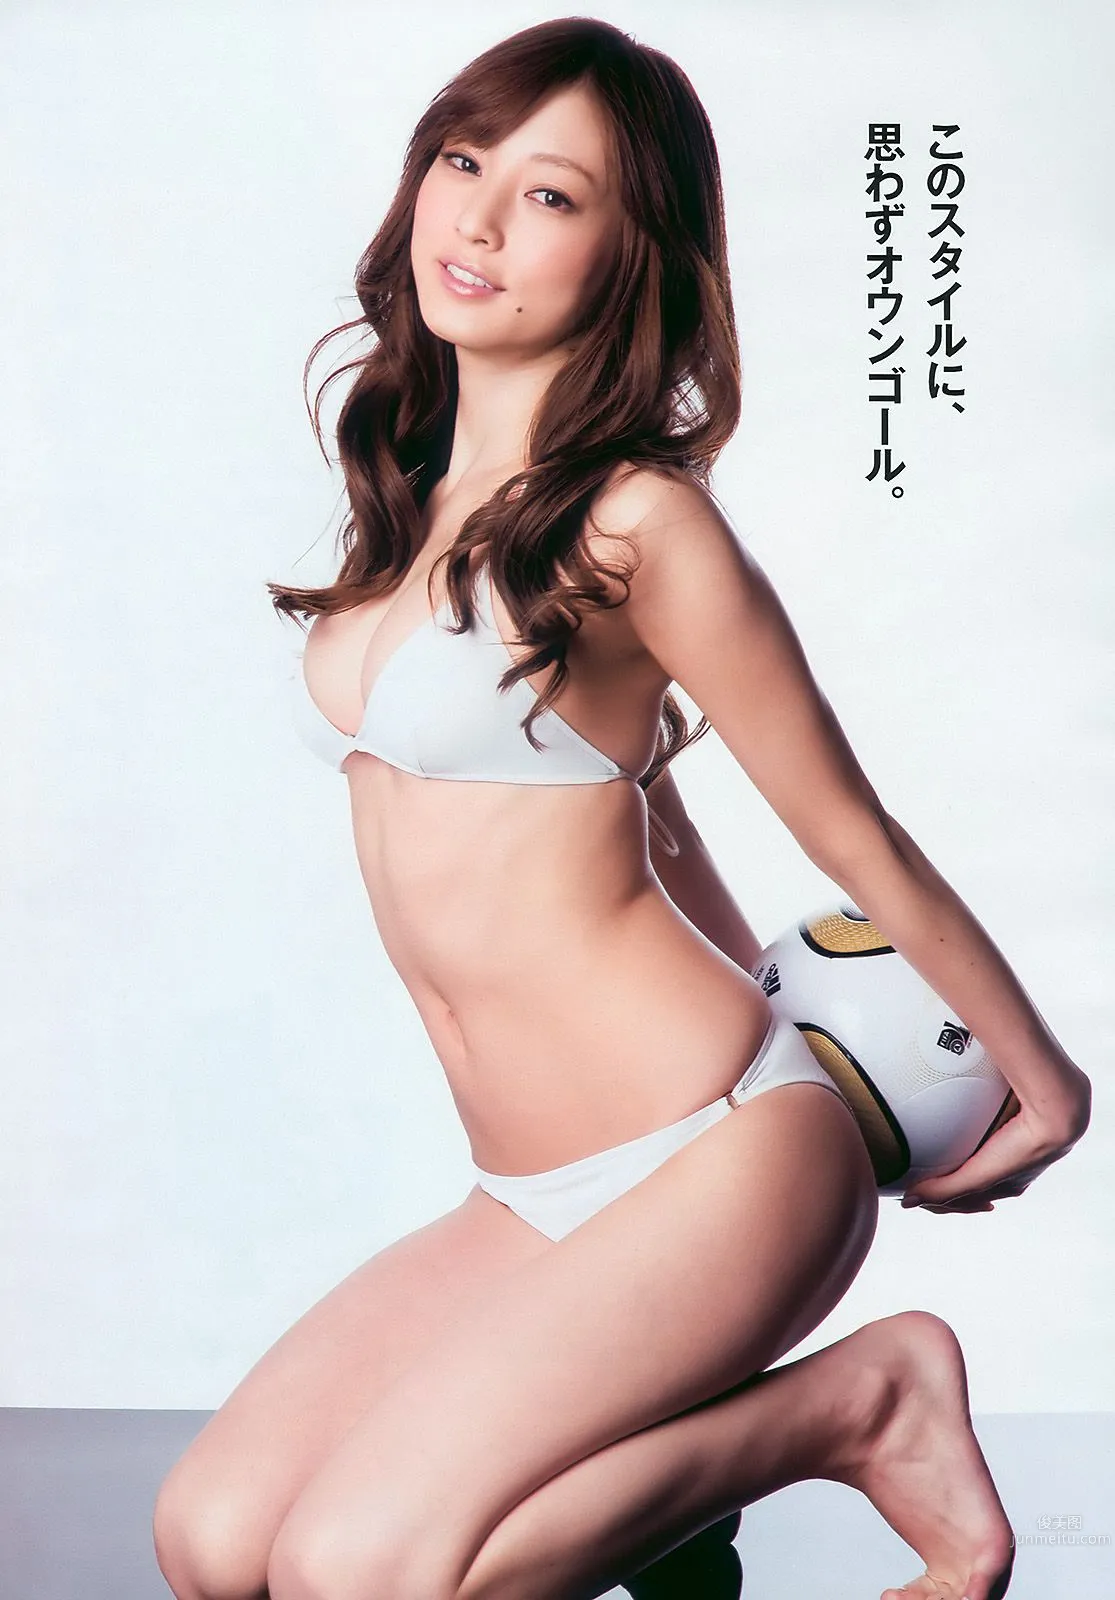 杉本有美 池田夏希 愛衣 松岡音々 [Weekly Playboy] 2010年No.26 写真杂志5